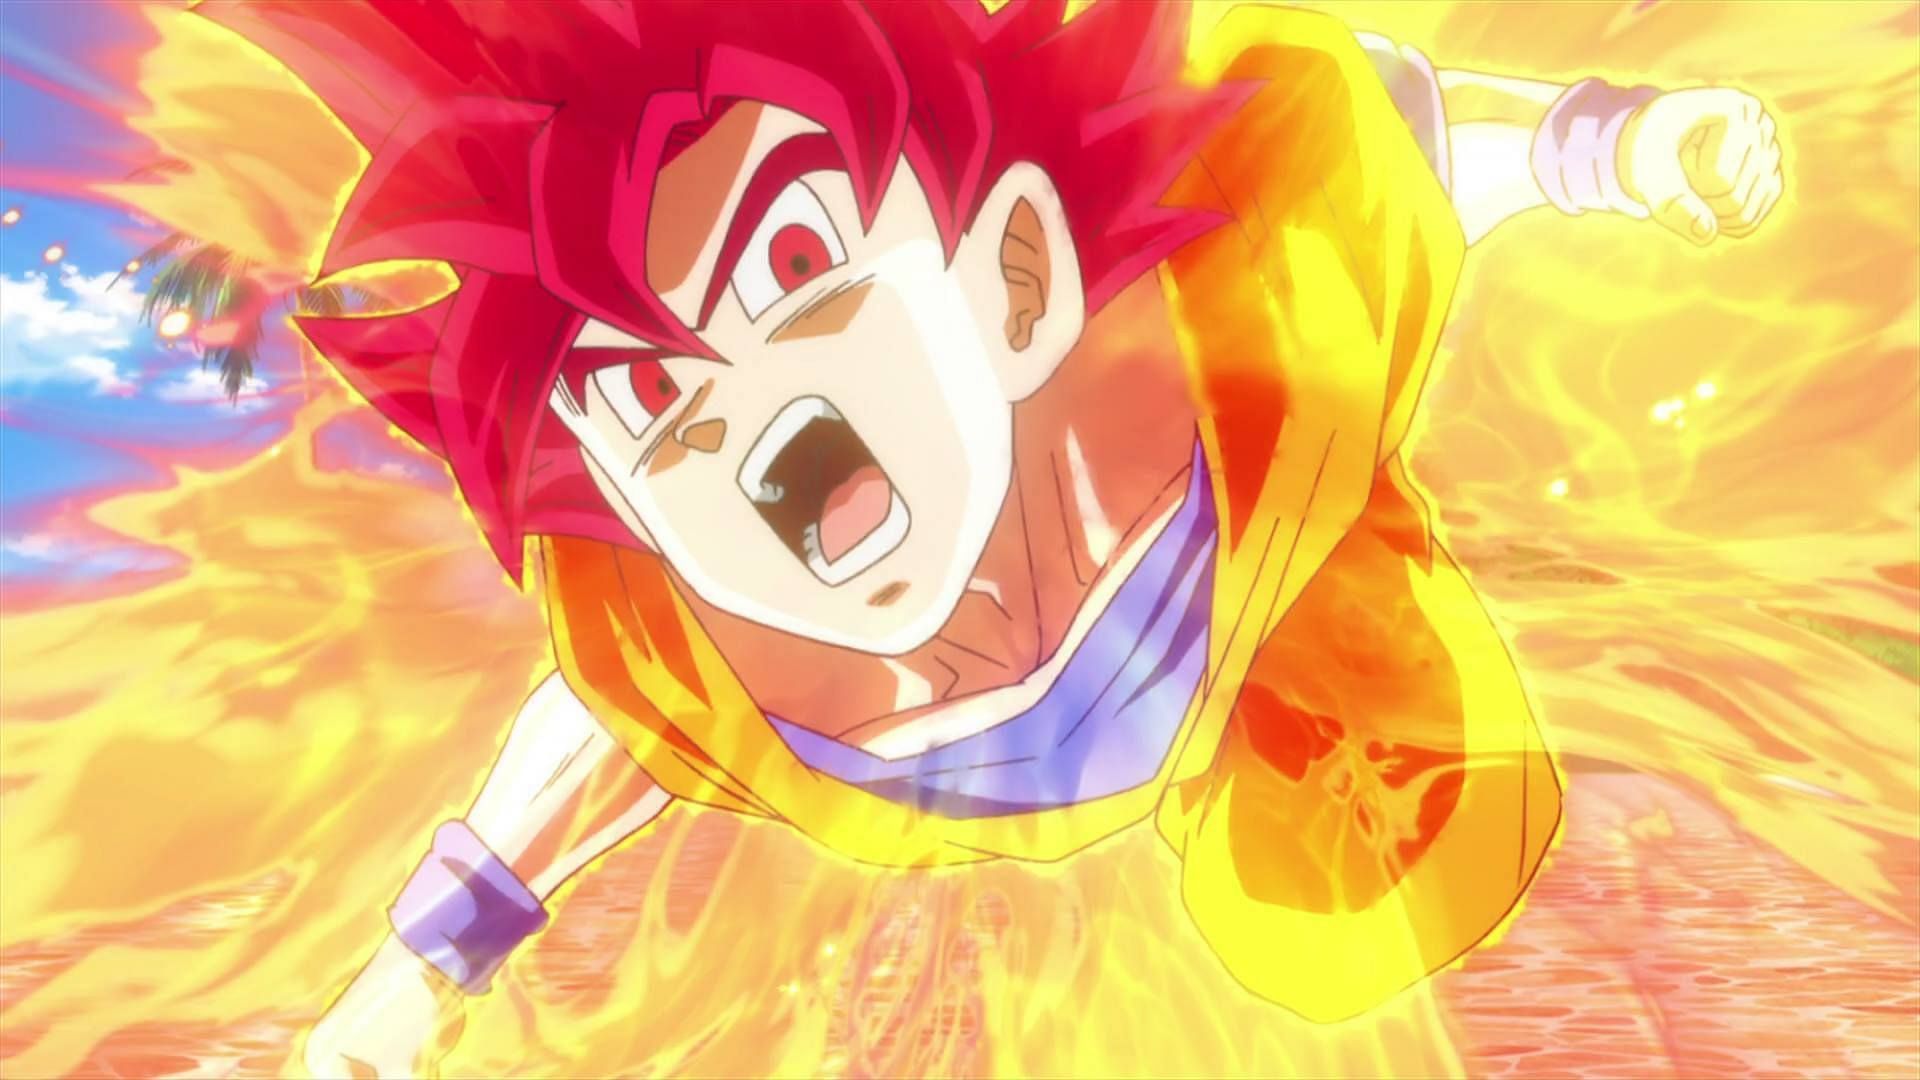 Goku hala daha güçlü olmak için eğitim alıyor (Görüntü Akira Toriyama/Shueisha, Viz Media, Dragon Ball Super)